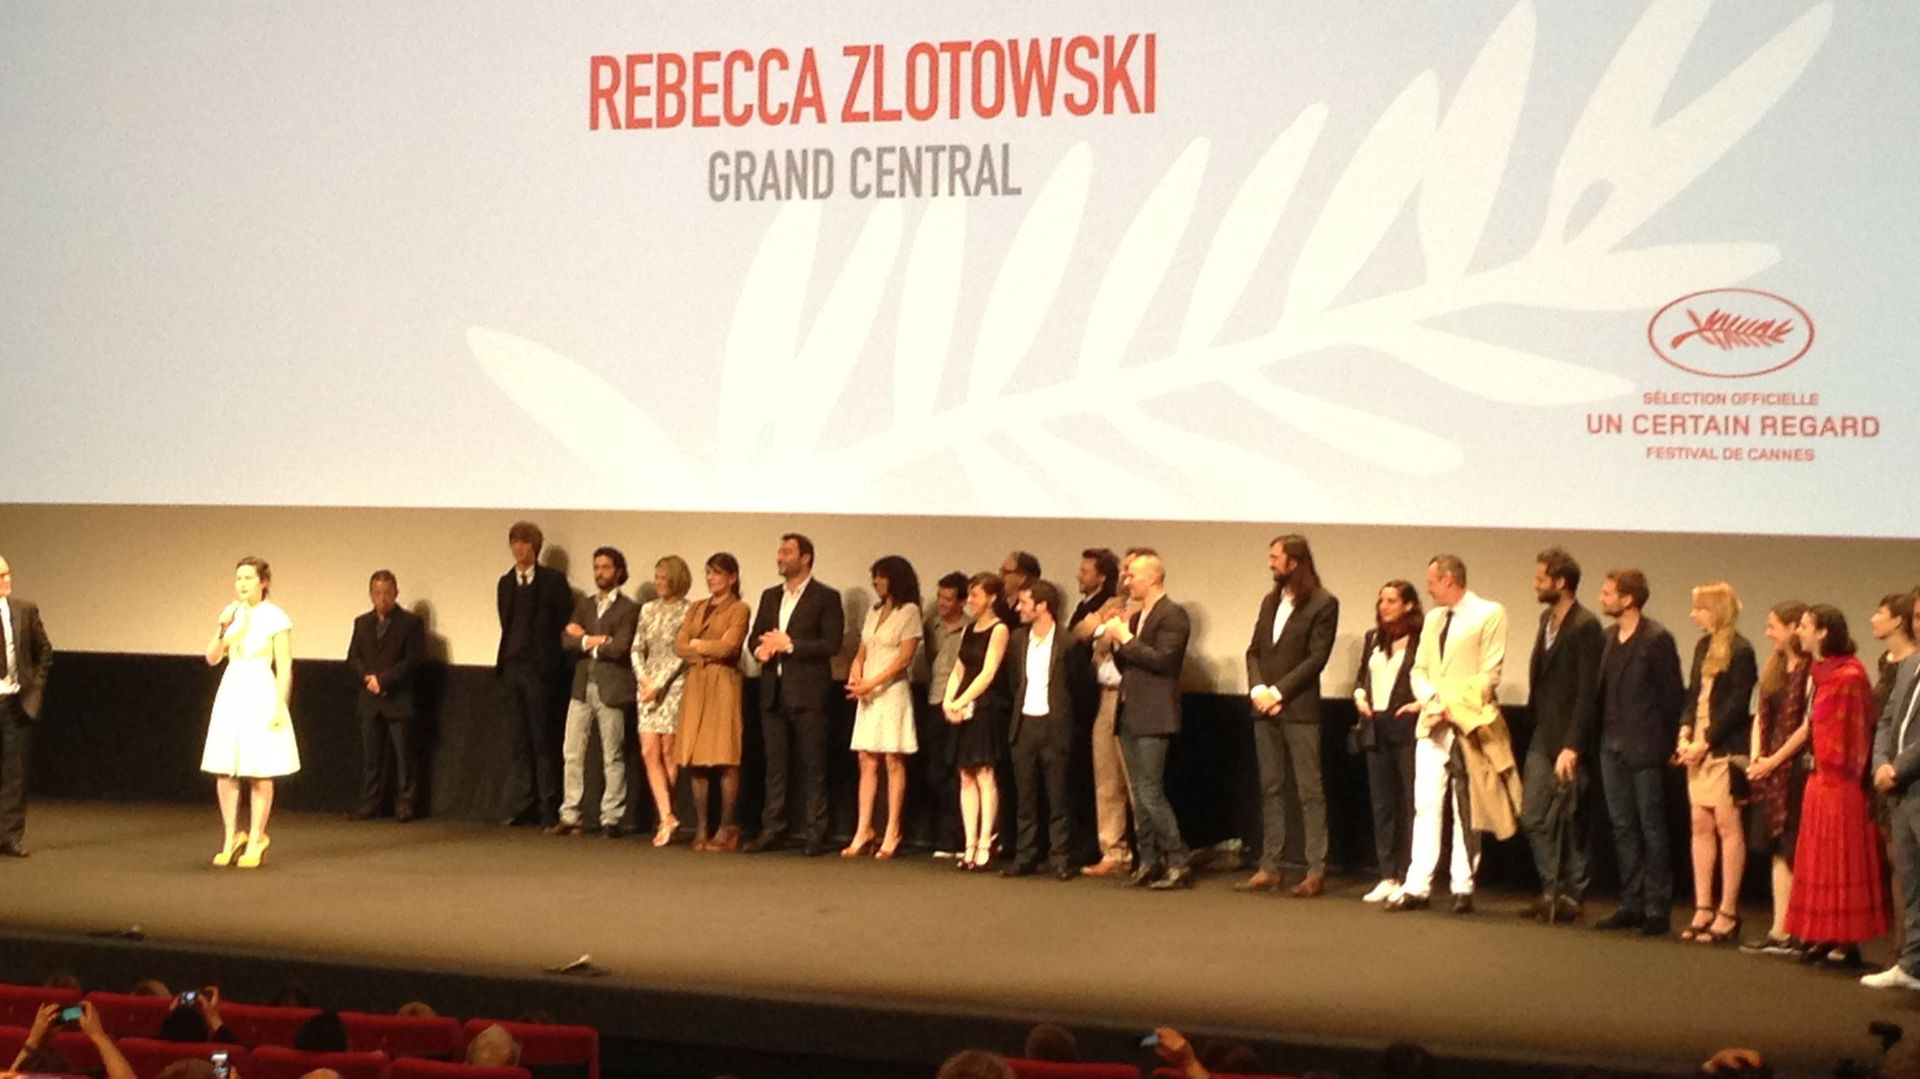 L'équipe du "Grand Central" venue en nombre pour présenter le film à Cannes